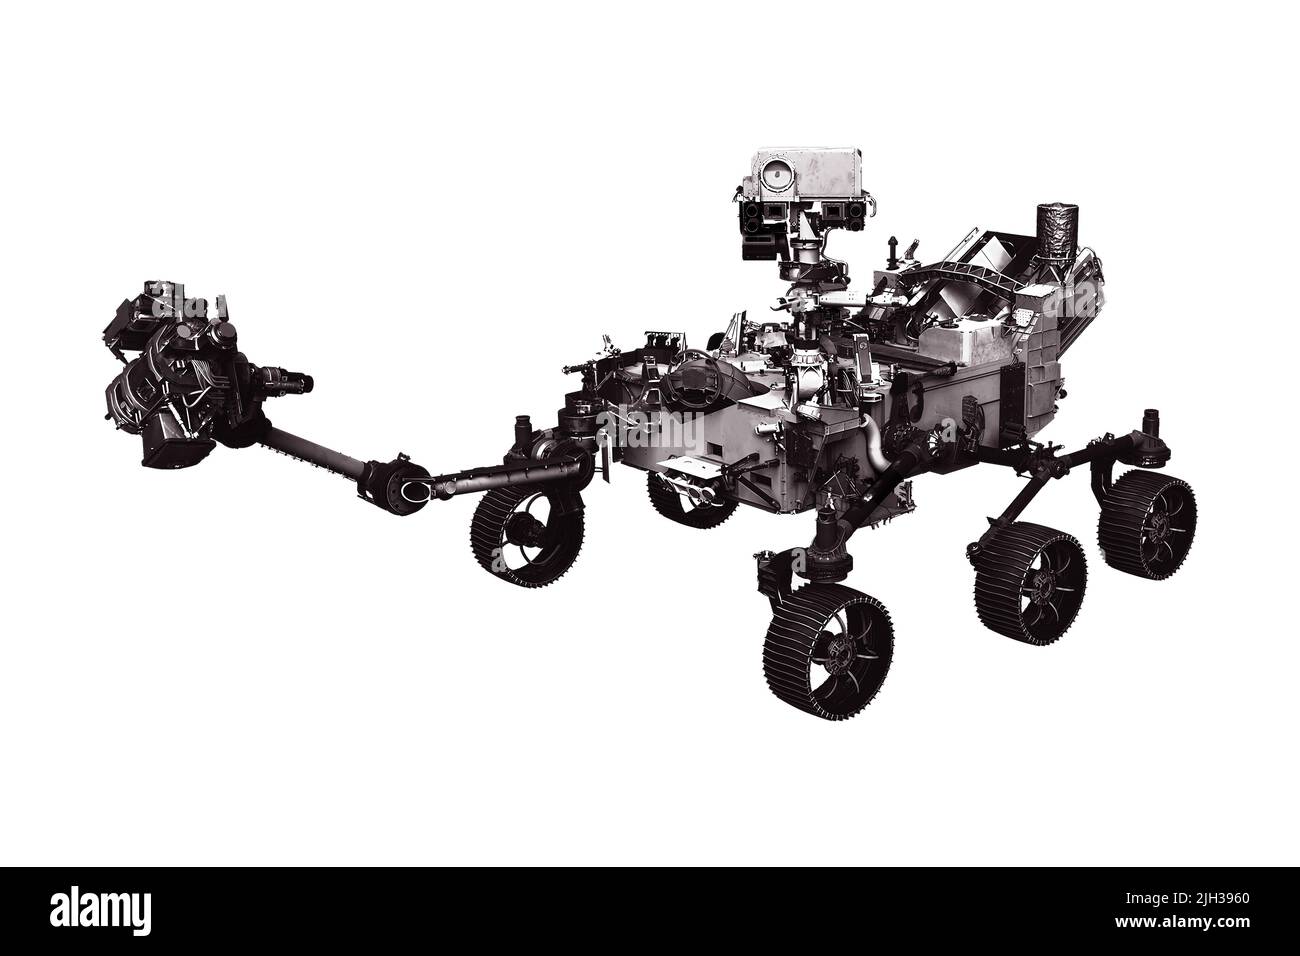 Mars rover isolé sur fond blanc. Éléments de cette image fournis par la NASA. Photo de haute qualité Banque D'Images